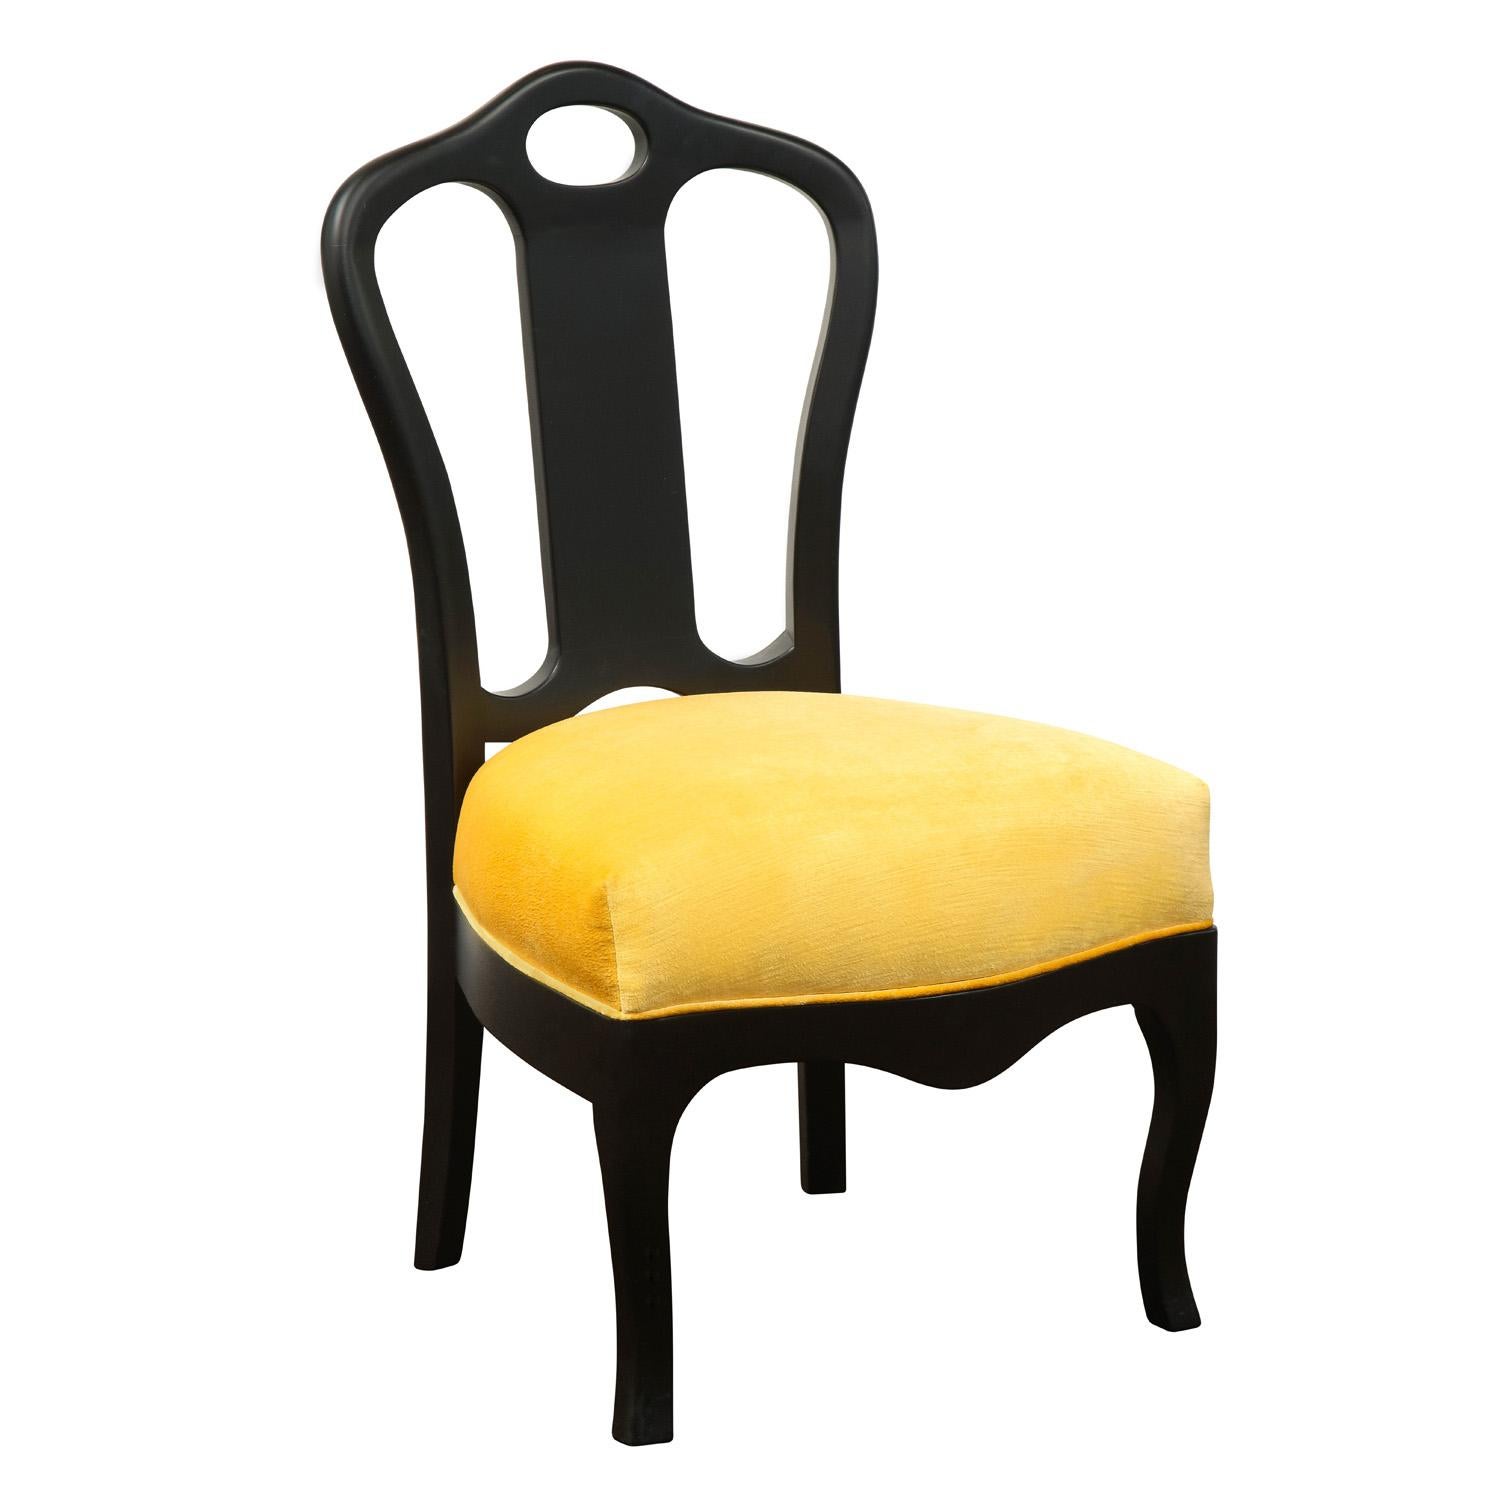 Schicker Hochziehsessel aus ebonisiertem Mahagoni mit neu mit gelbem Samt gepolstertem Sitz von Van Day Truex in Zusammenarbeit mit Harry Hinson, Amerikaner 1978. Dieser zeitlose Stuhl ist der perfekte Akzent für jeden Raum.